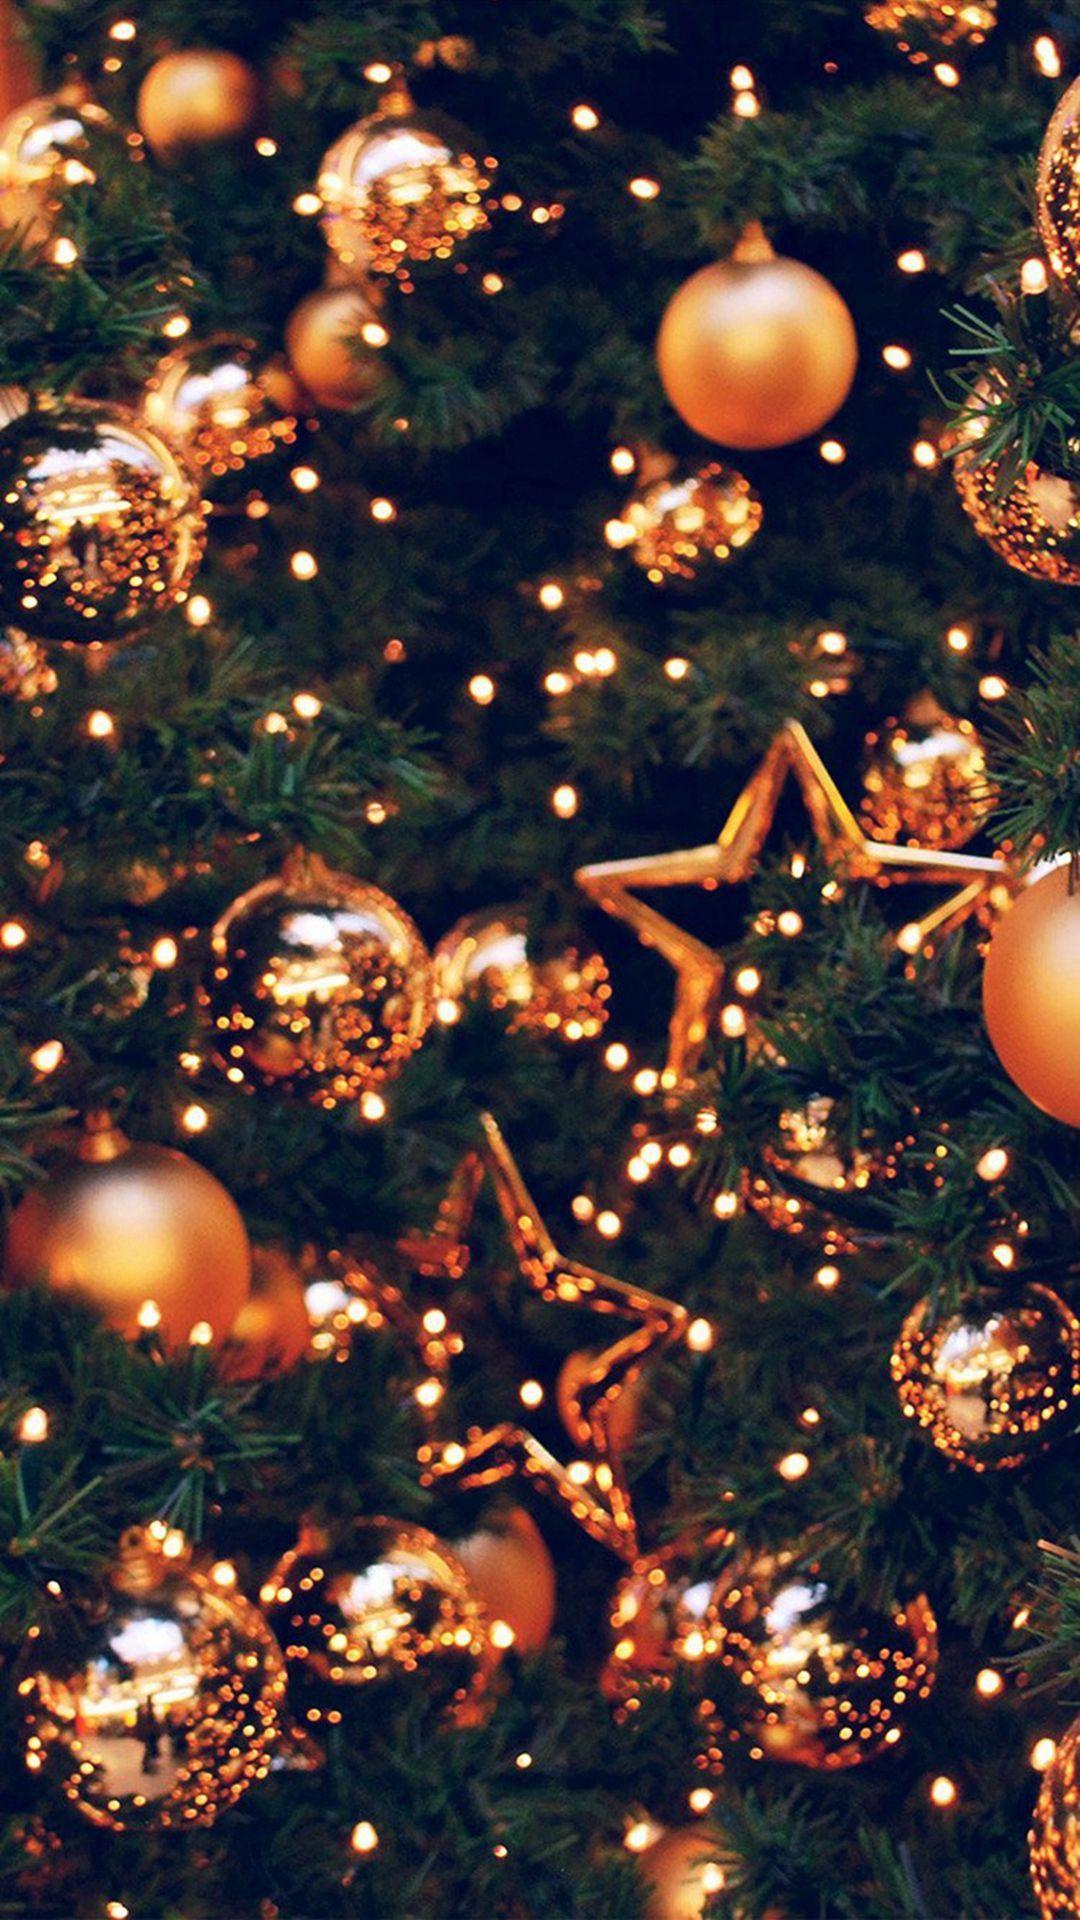 Mùa Giáng Sinh sắp đến rồi, và bạn muốn trang trí cho chiếc iPhone của mình thật đặc biệt và ấn tượng. Hãy thử tải ngay những hình nền Christmas Lights iPhone Wallpapers với những chùm đèn lấp lánh và những gam màu tươi sáng. Bạn chắc chắn sẽ thấy rất thích thú với những hình ảnh tuyệt đẹp này.